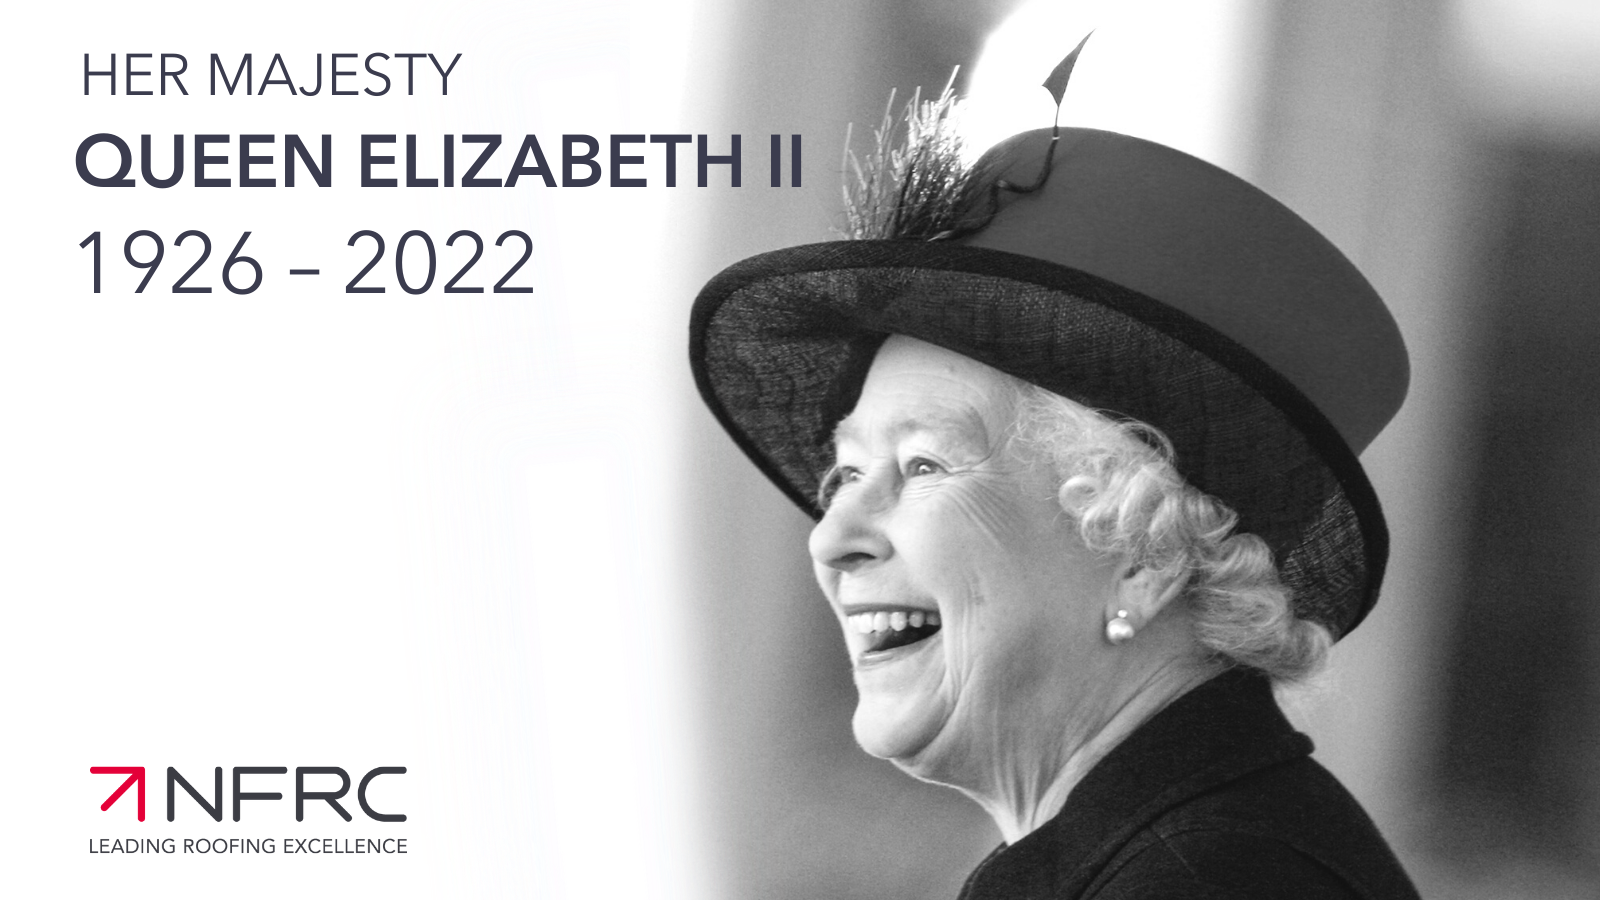 HM Queen Elizabeth II 1926 – 2022